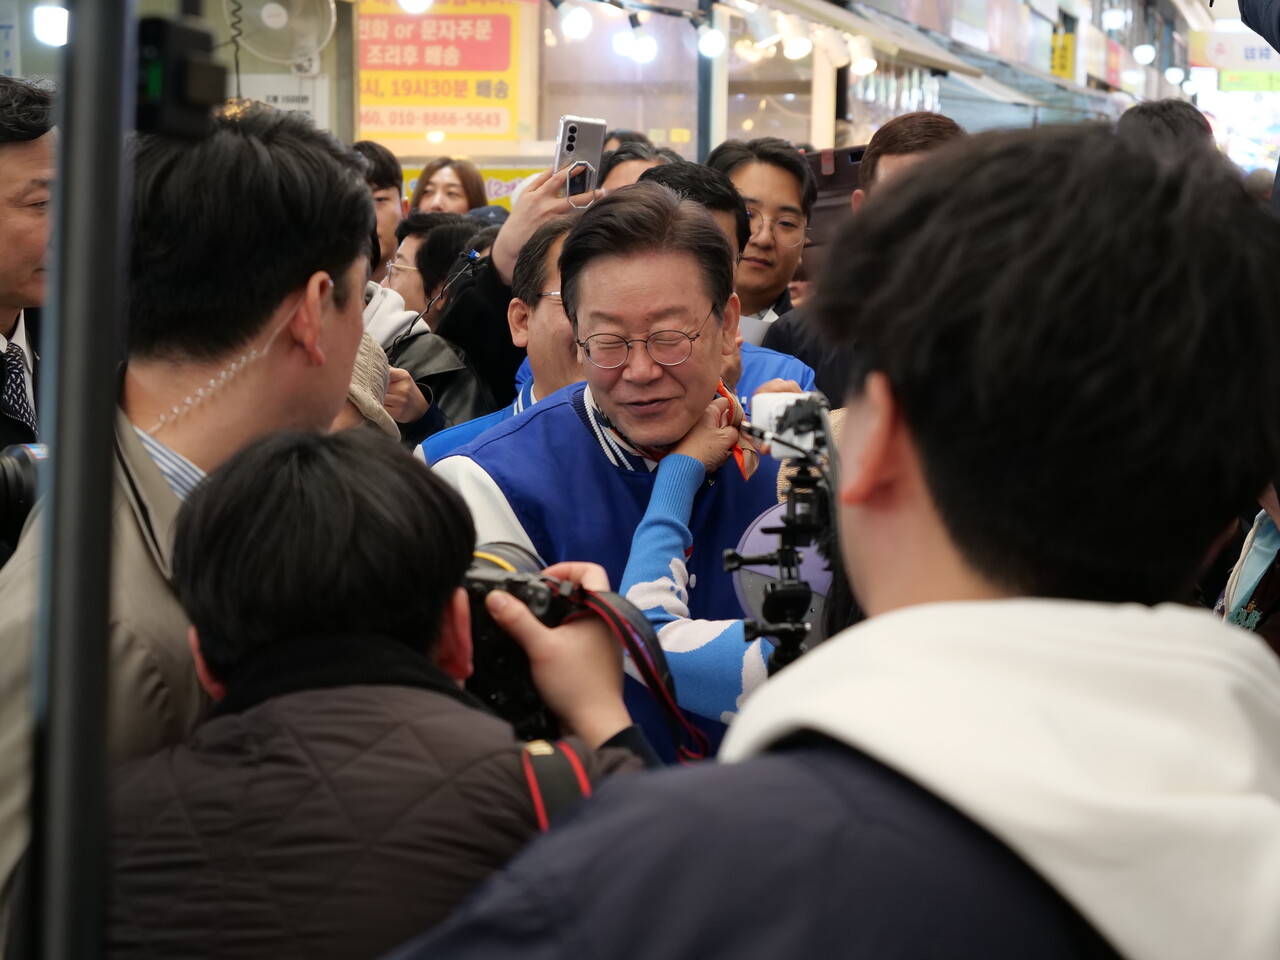 세종전통시장을 찾은 이재명 민주당 대표에게 한 지지자가 목에 스카프를 둘러주고 있다. 한지혜 기자.